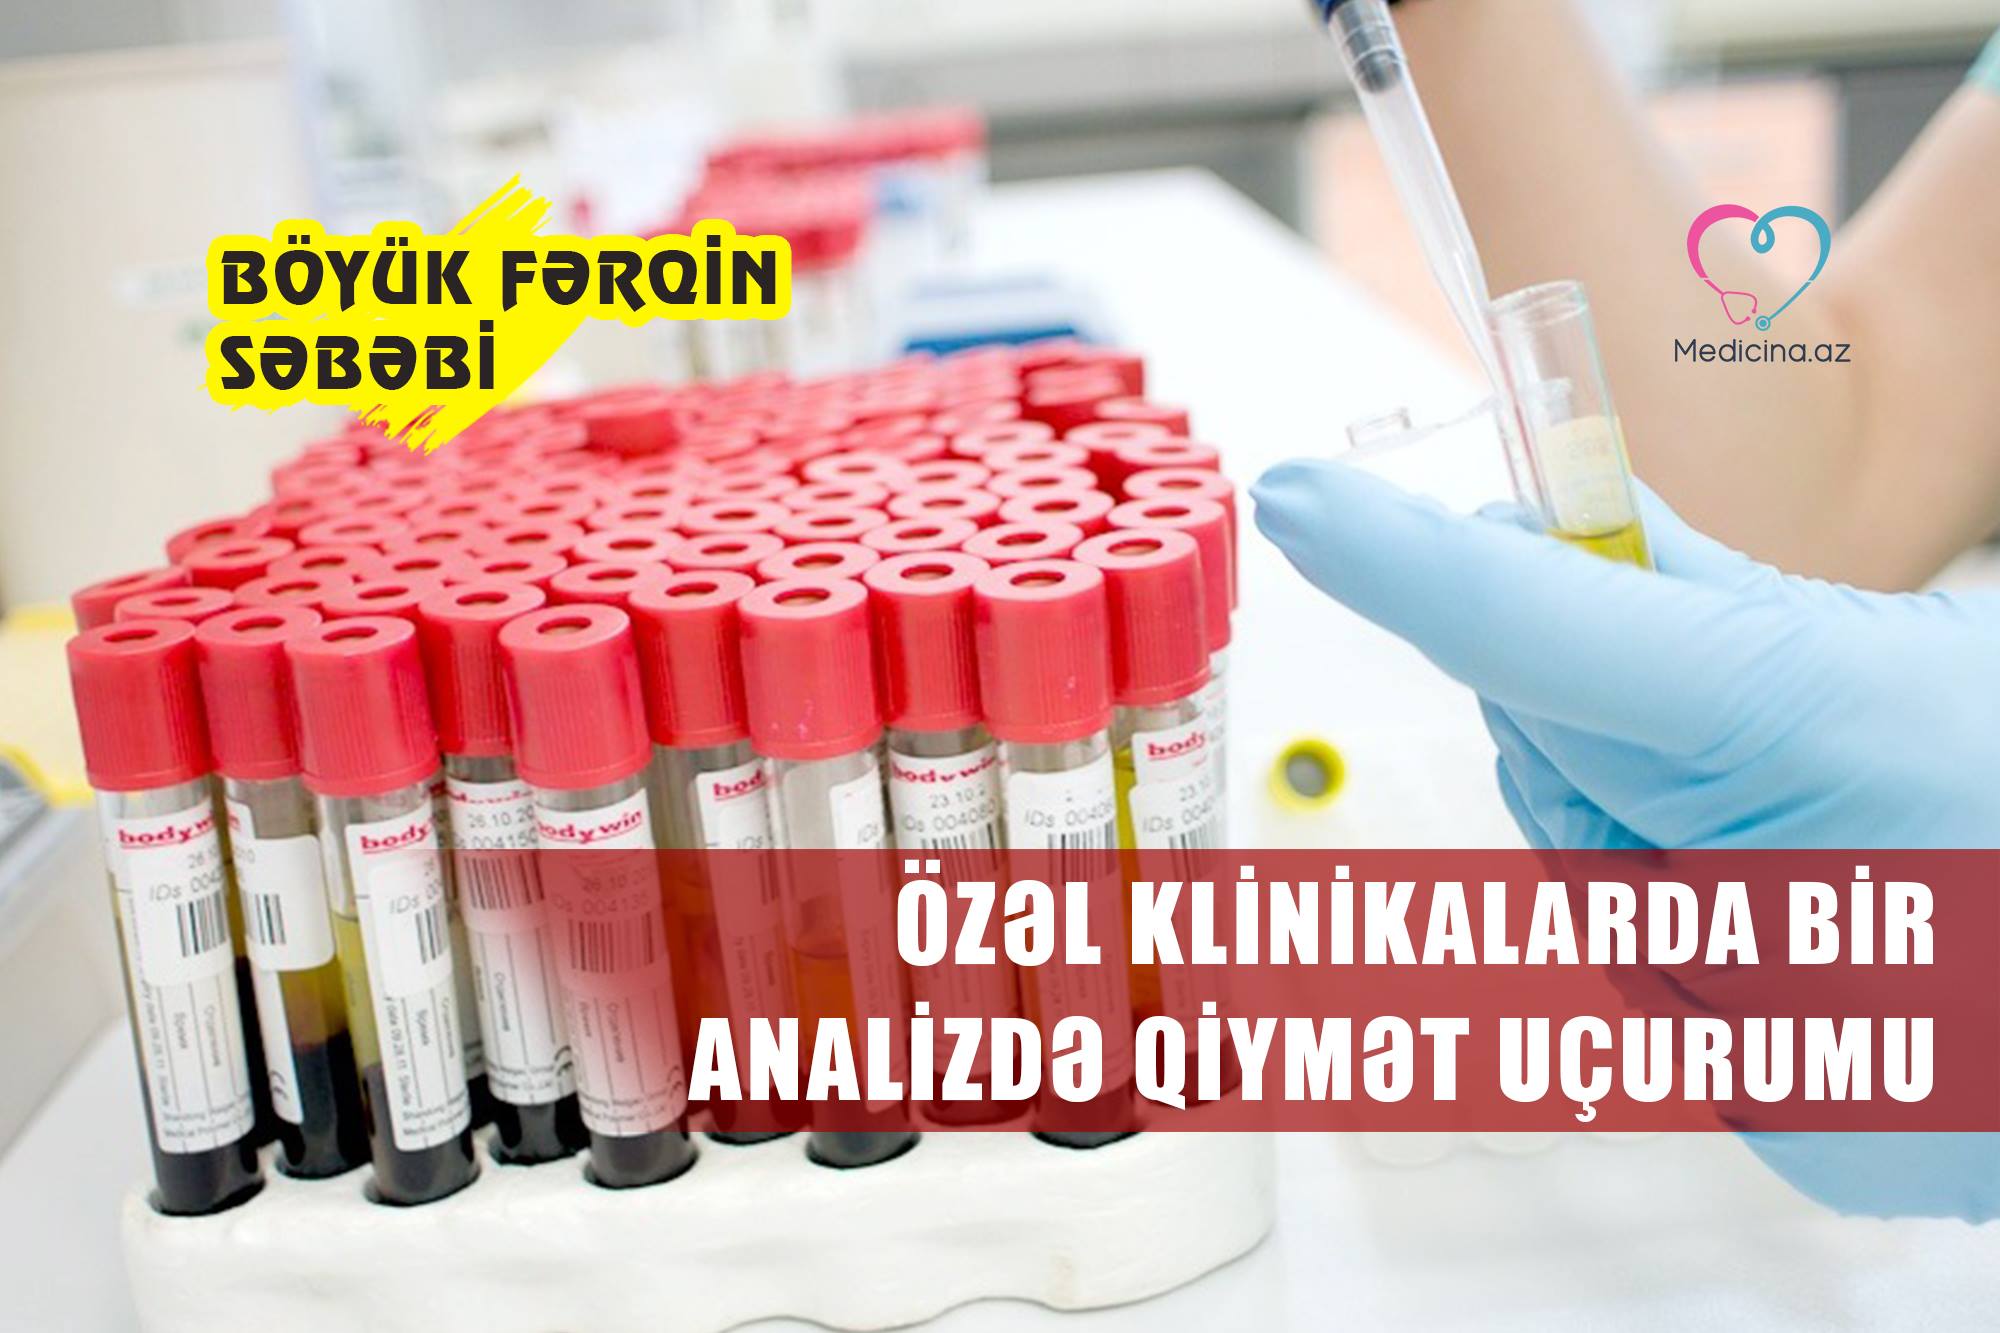 Özəl klinikalarda bir analizdə qiymət uçurumu : “Baku Clinic” 240, “Medicus” 80 manat  -  Böyük fərqin səbəbi